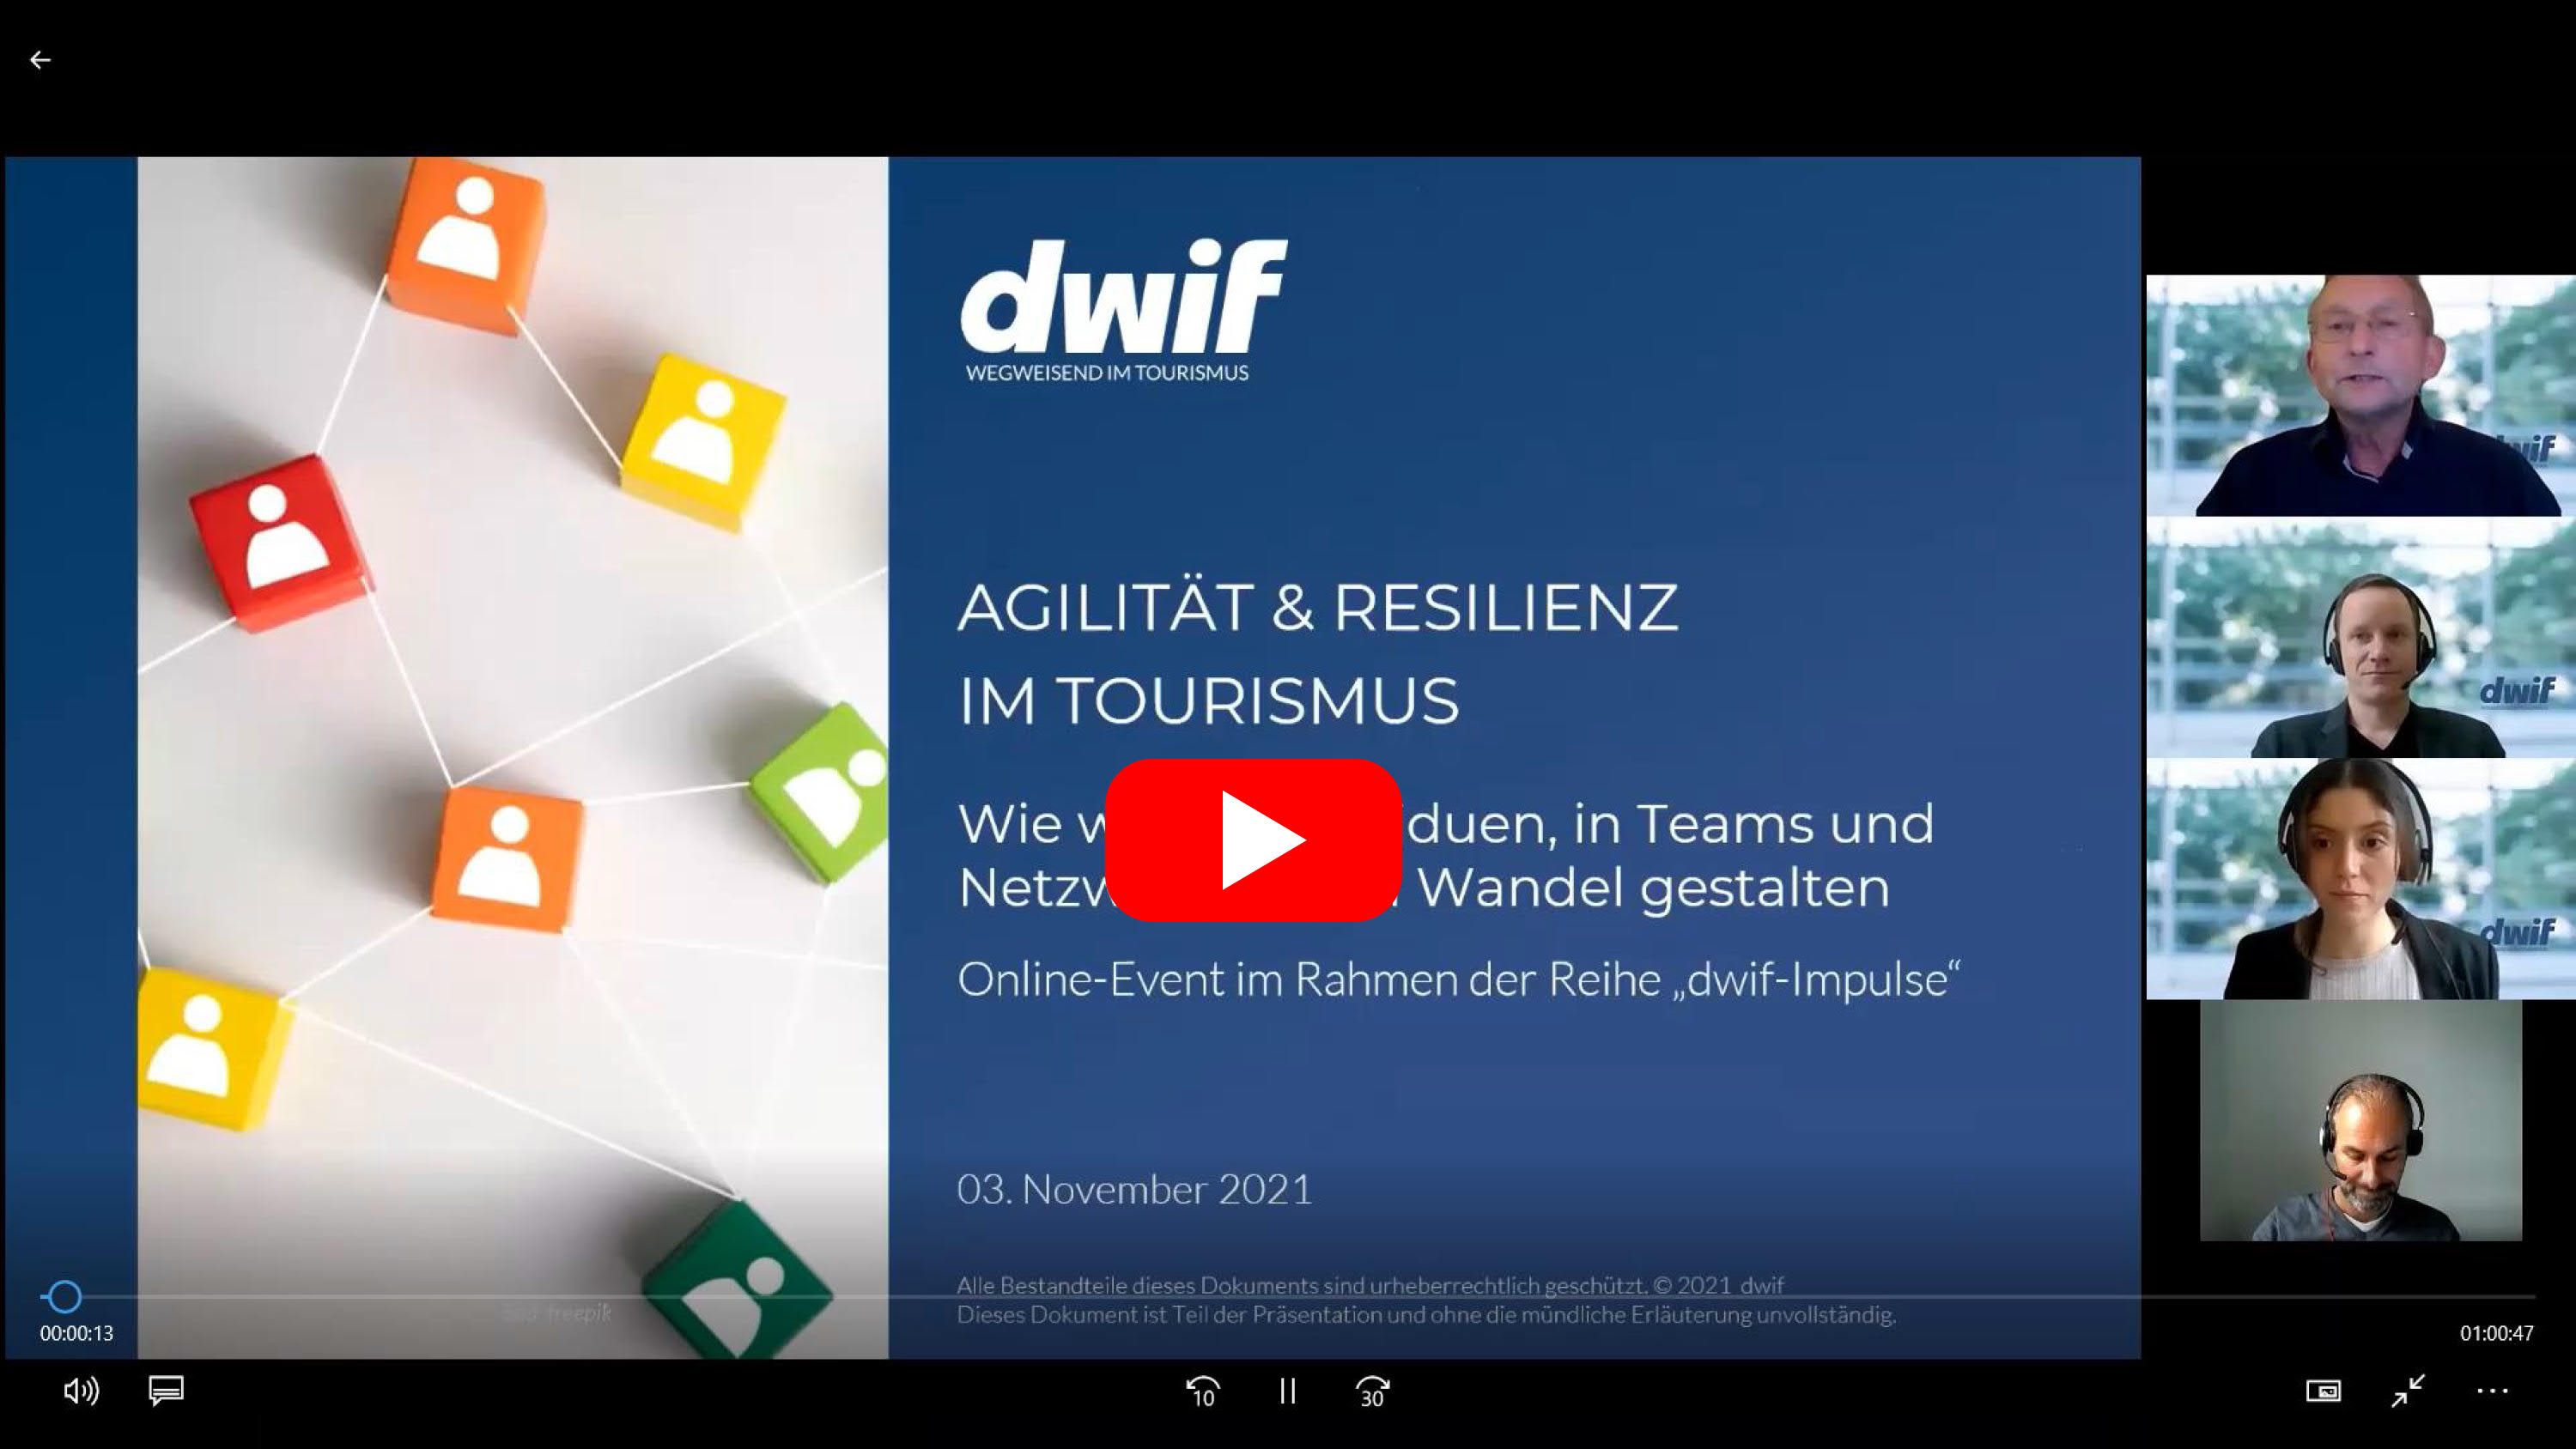 dwif-Impulse: Agilität &Resilienz im Tourismus